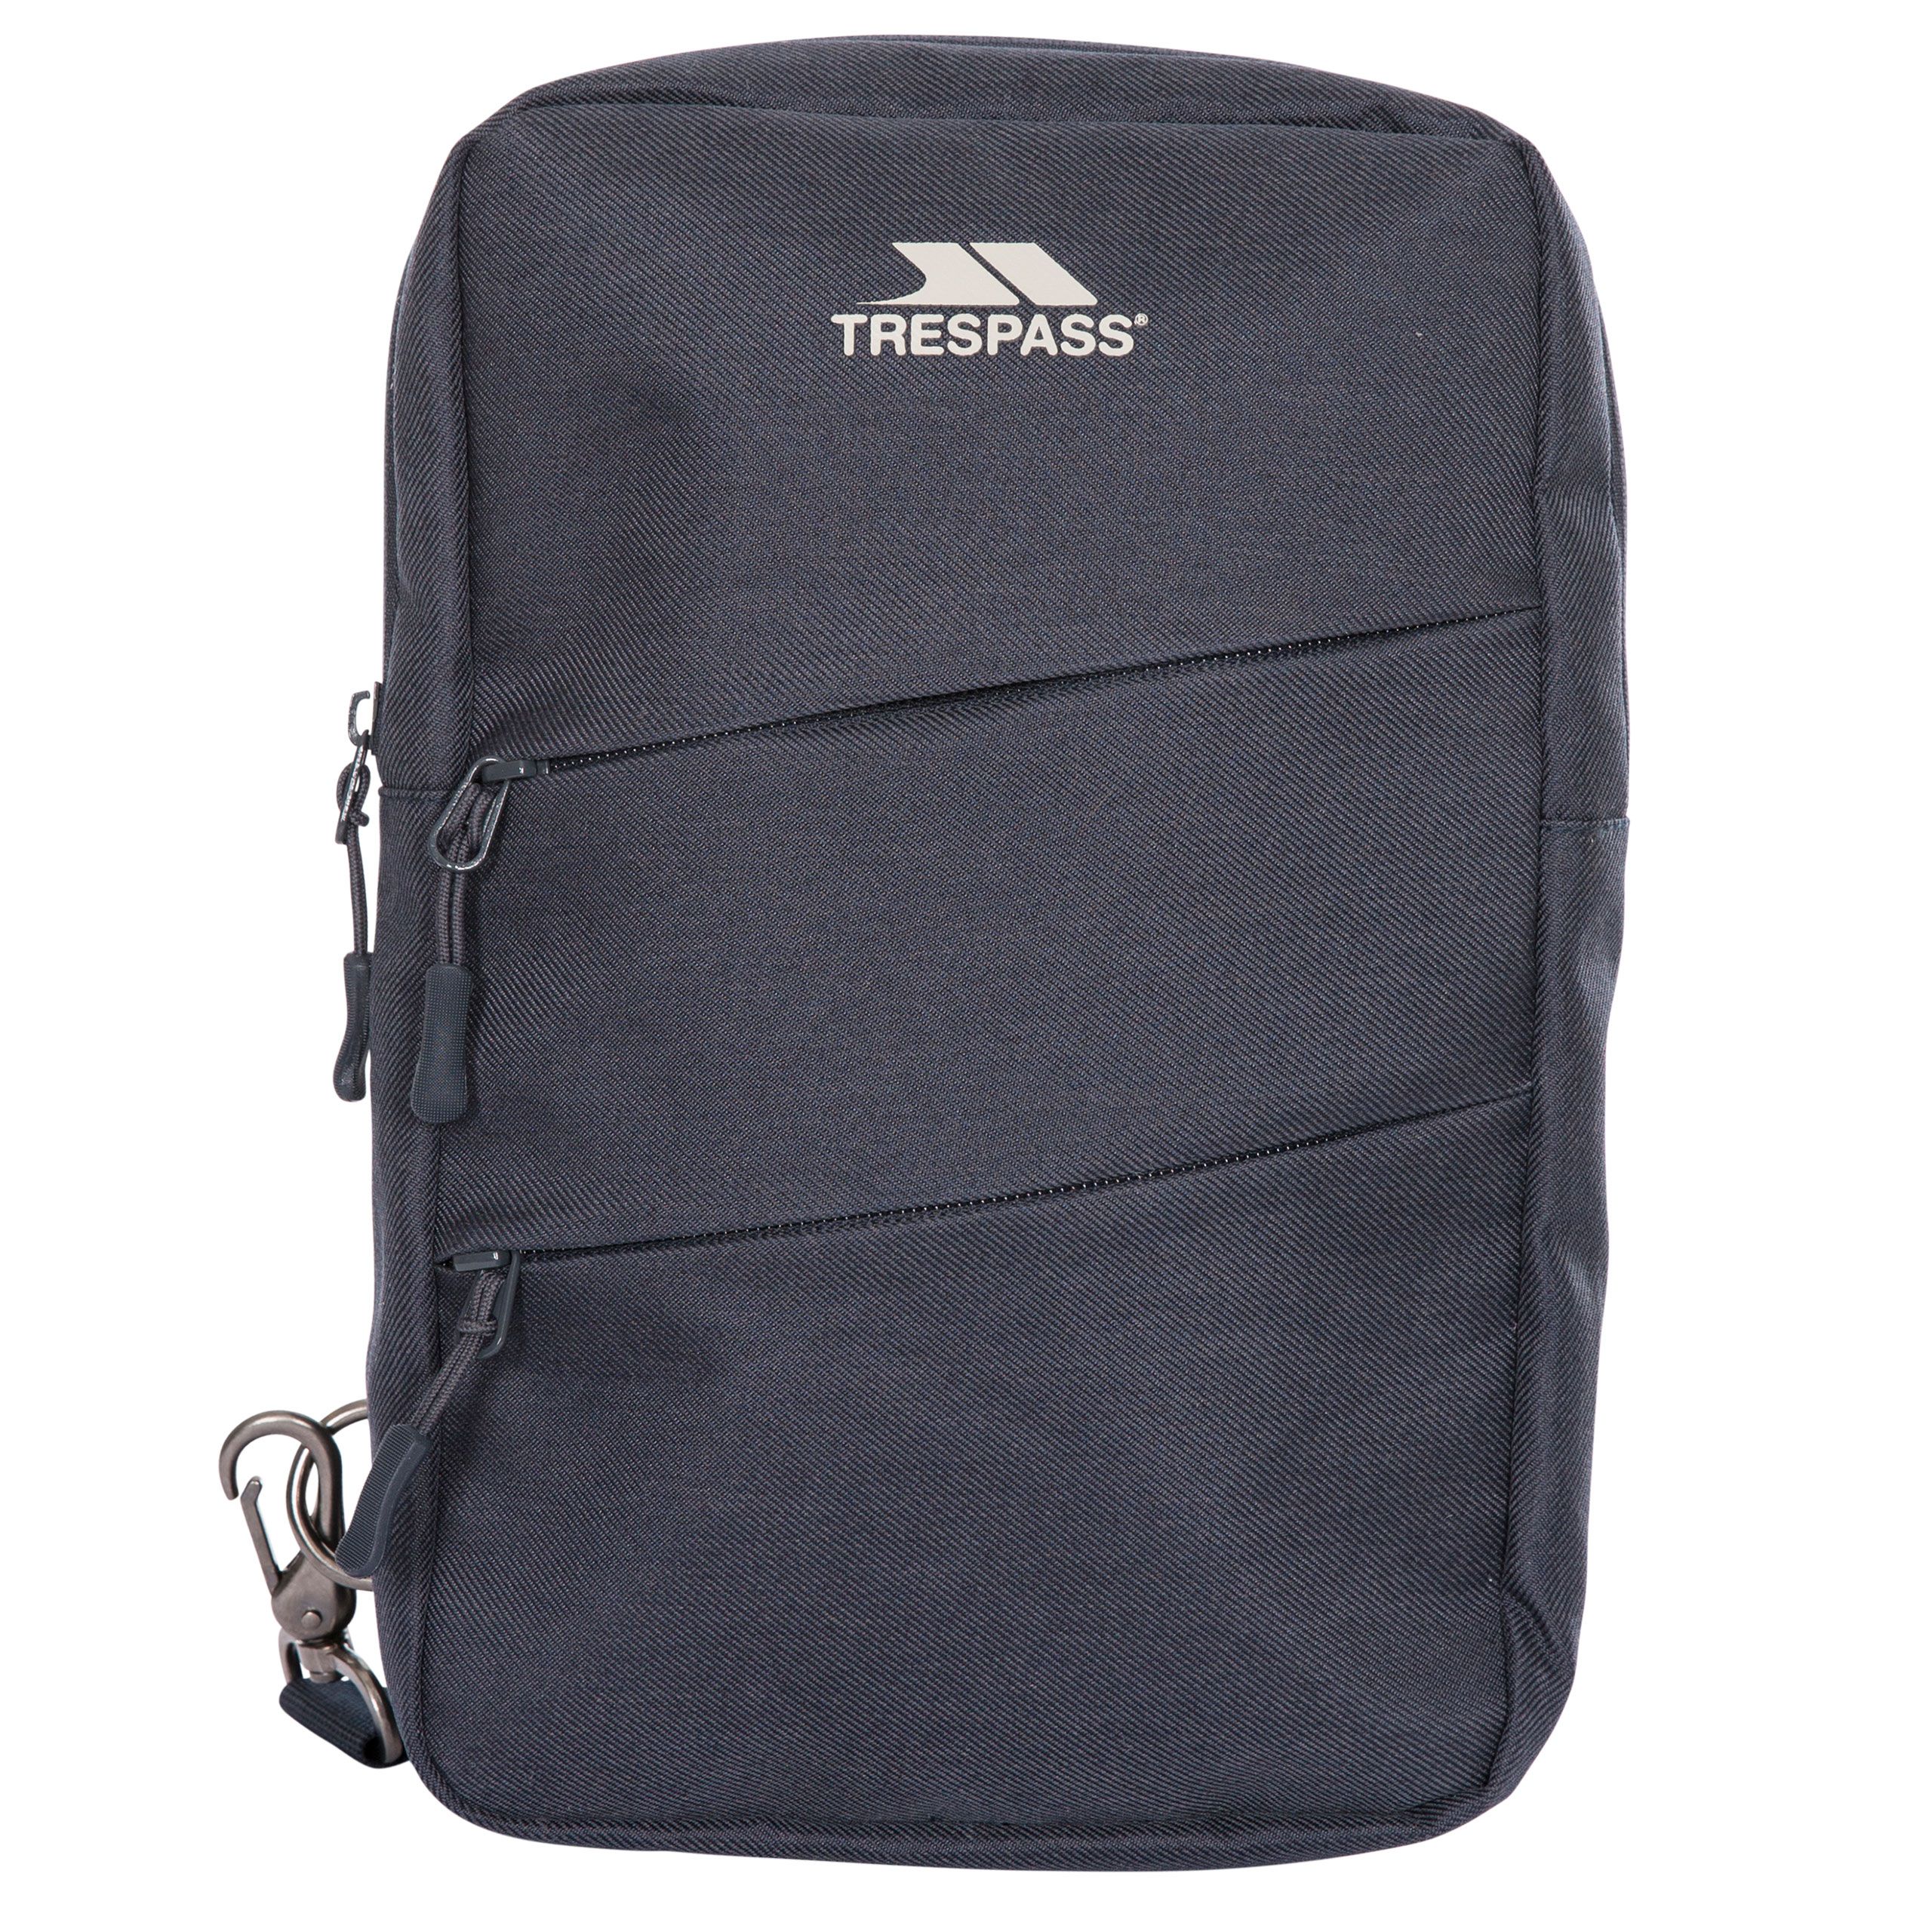 Trespass Travel Chest Bag Chesta